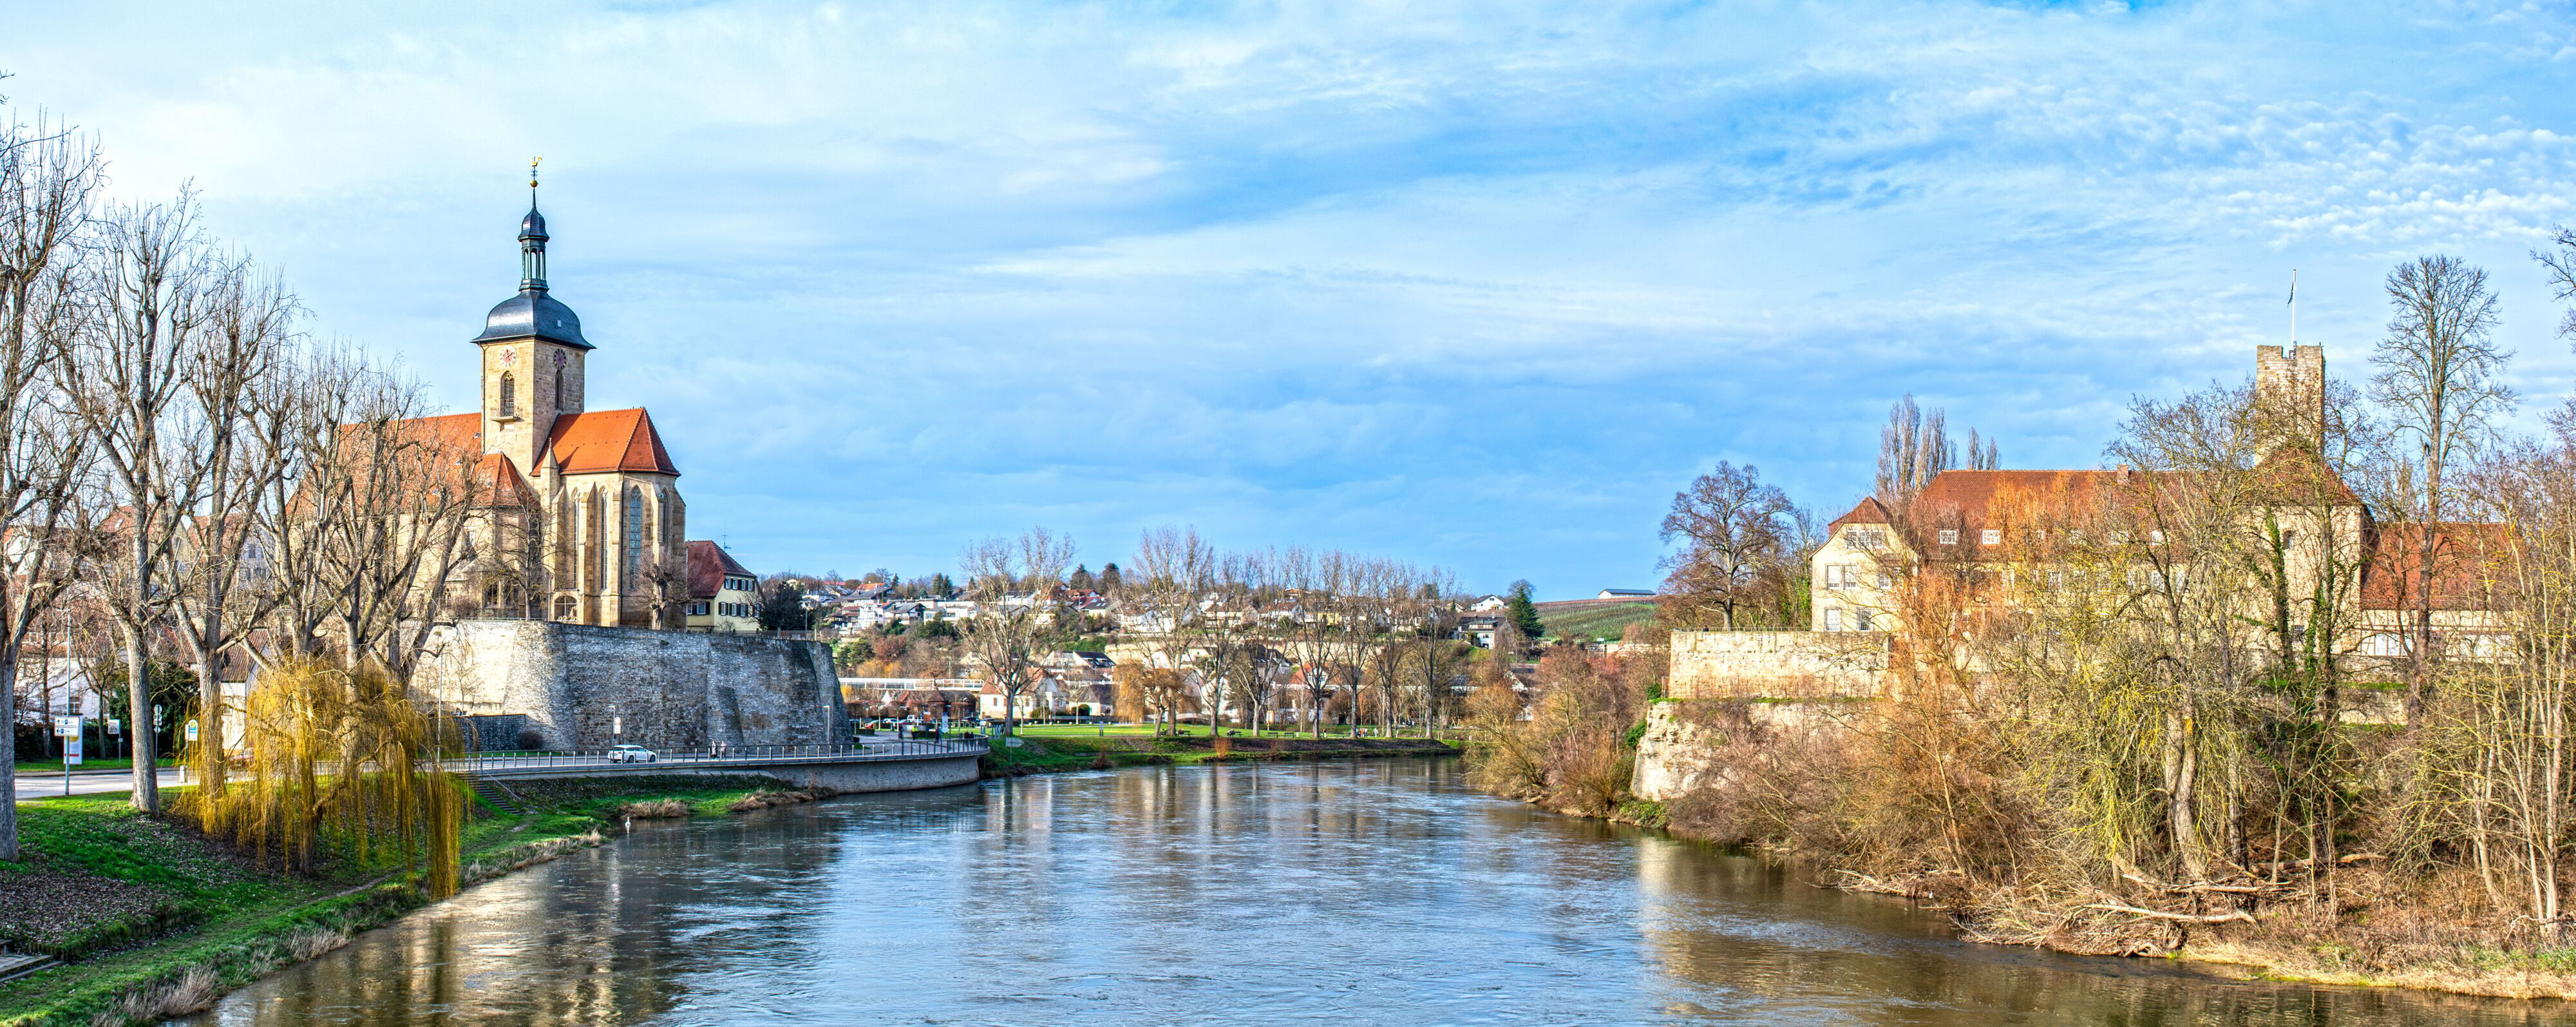 Blick auf den Neckar mit Regiswindiskirche und Burg